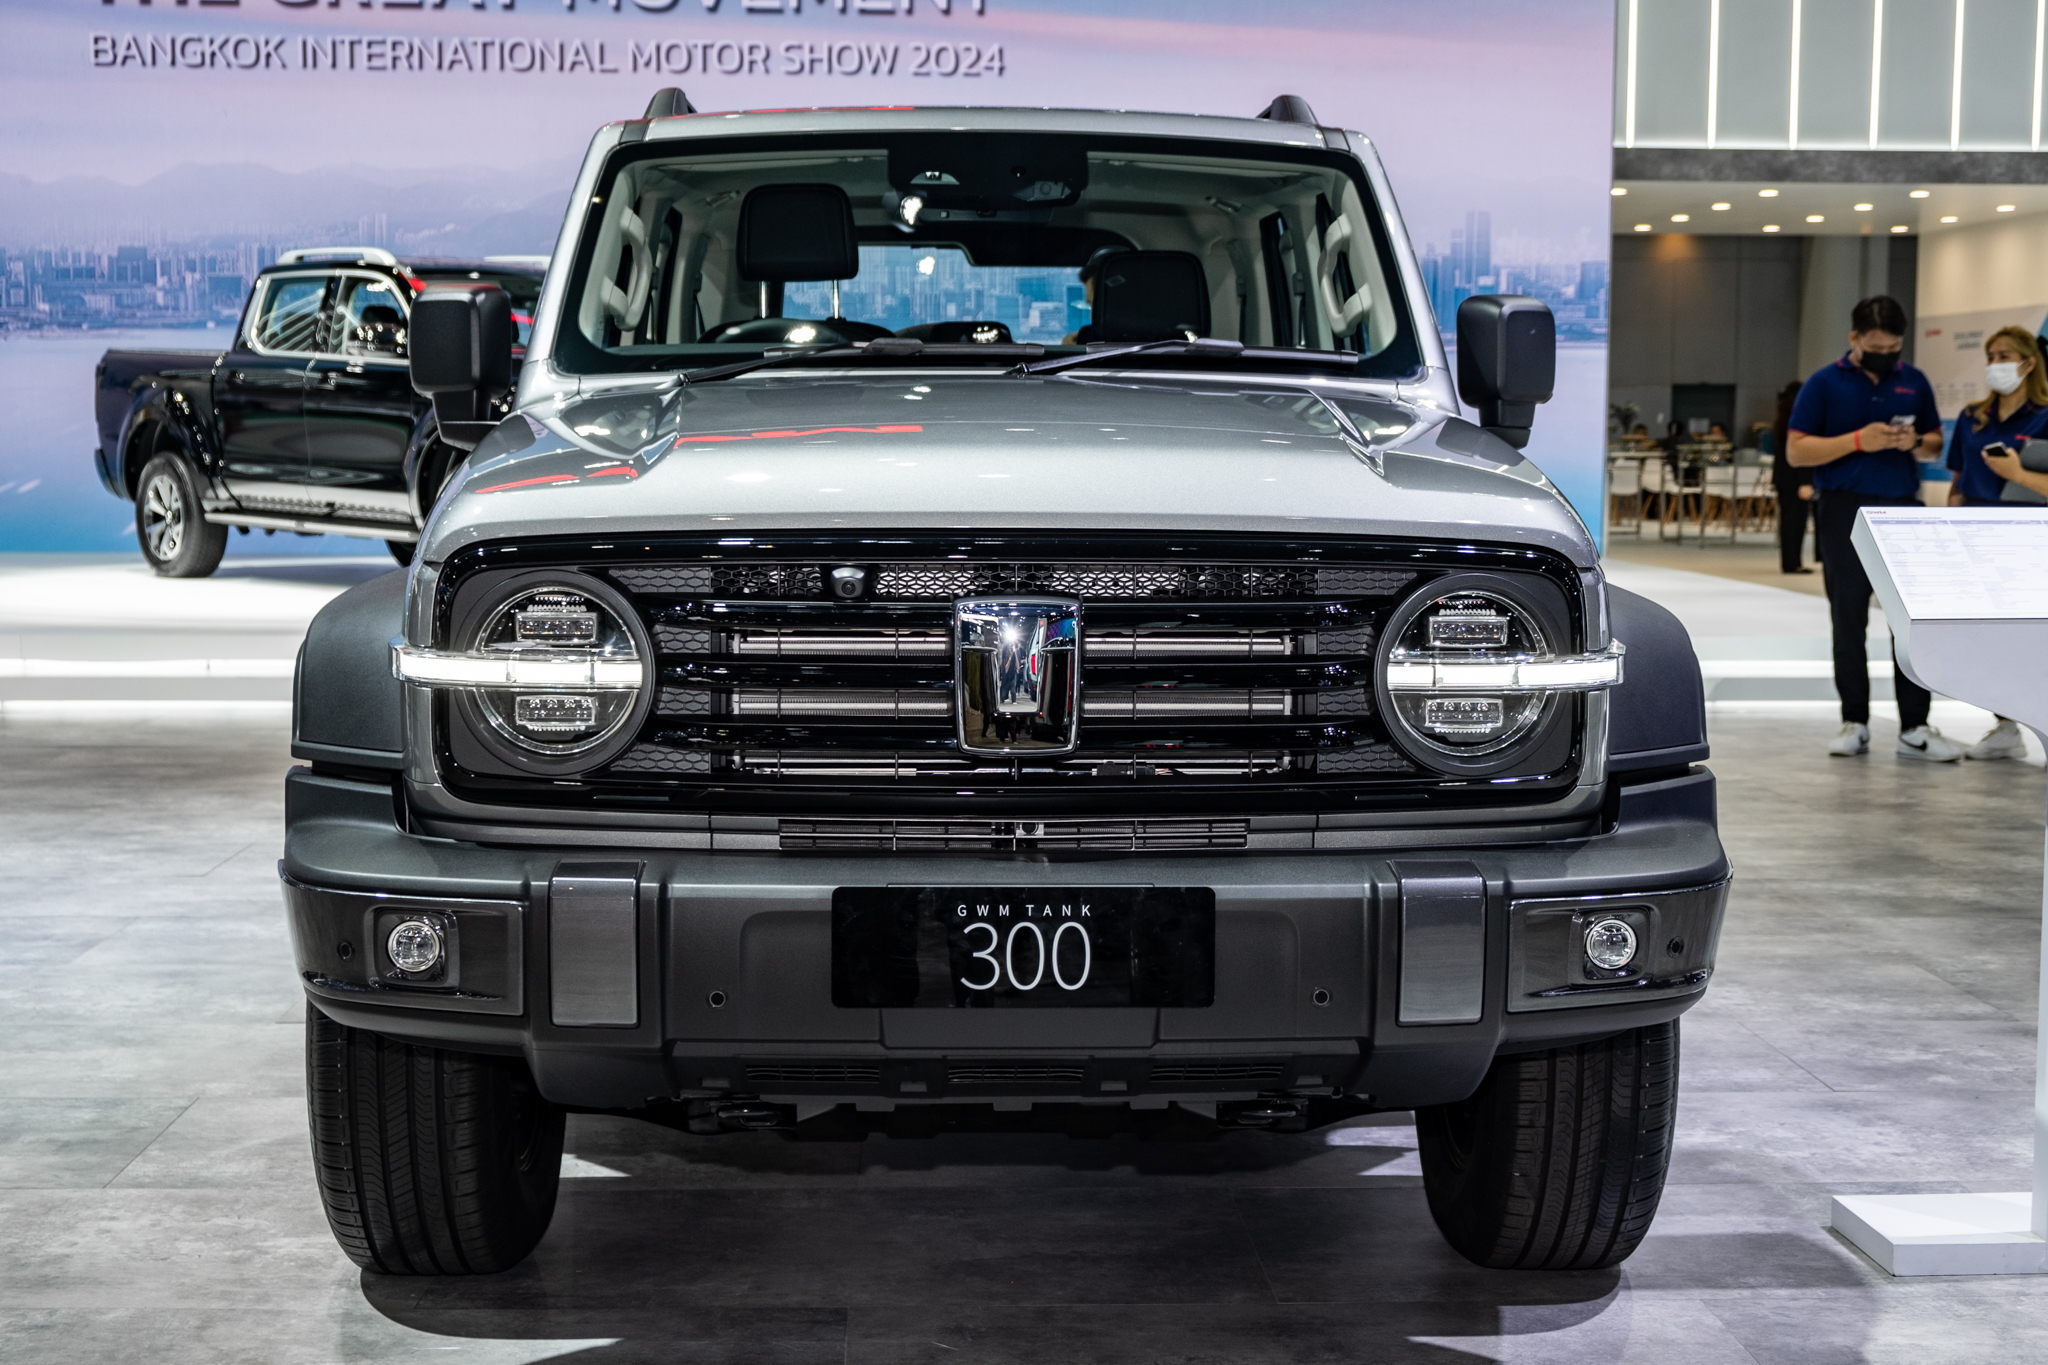 Đây là lý do vì sao GWM Tank 300 có giá dự kiến hơn 1 tỷ tại Việt Nam: Nhiều trang bị off-road như Land Rover, máy hybrid 2.0L, hộp số 9 cấp - Ảnh 3.